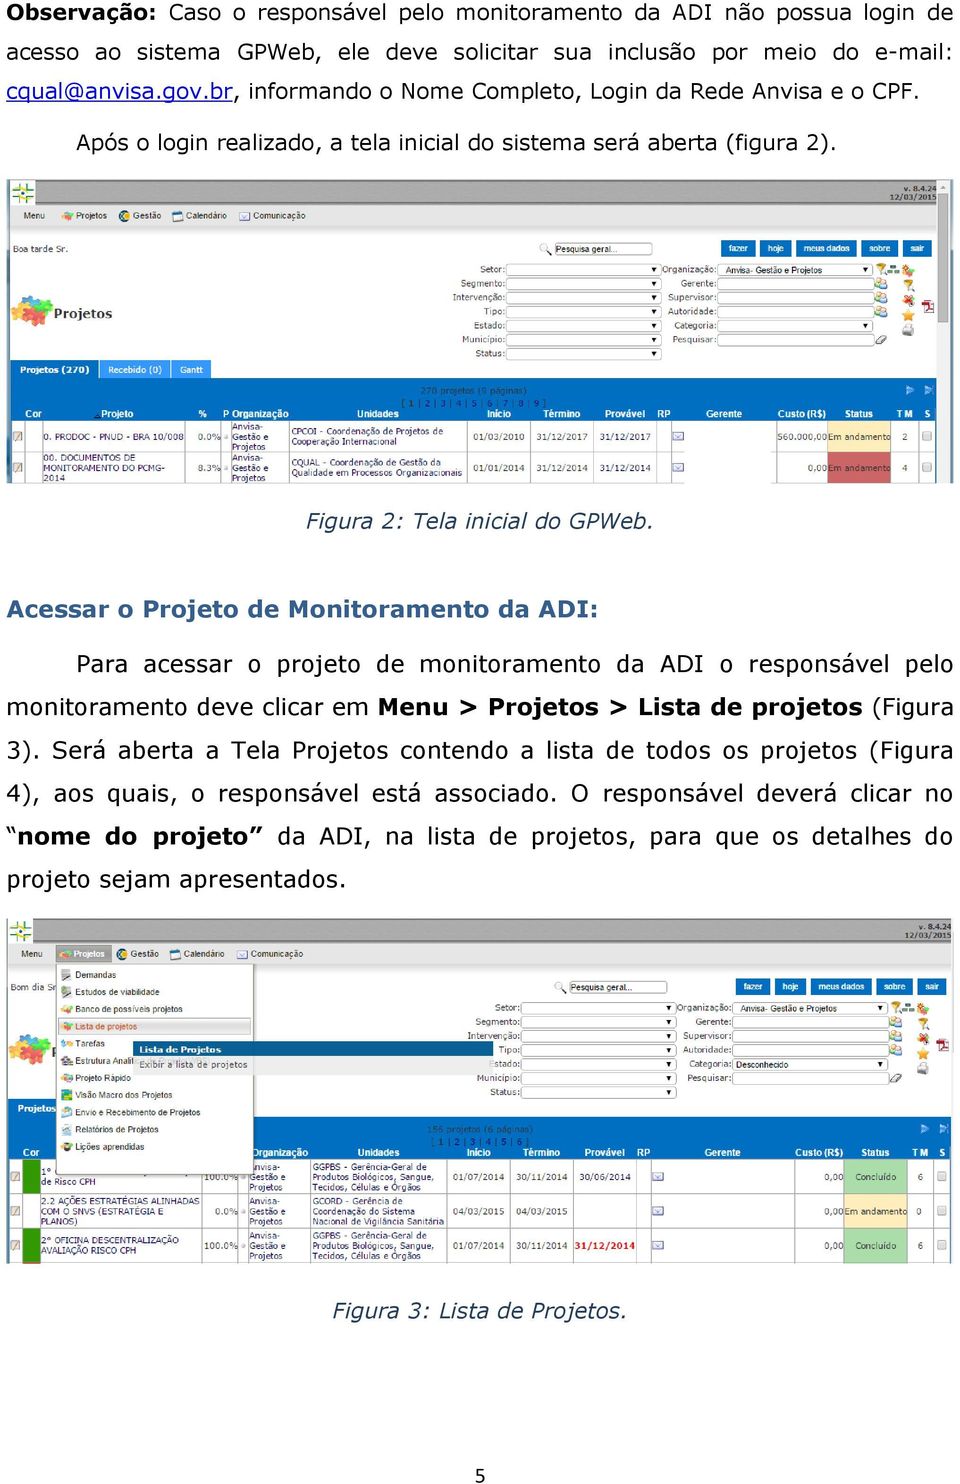 Acessar o Projeto de Monitoramento da ADI: Para acessar o projeto de monitoramento da ADI o responsável pelo monitoramento deve clicar em Menu > Projetos > Lista de projetos (Figura 3).